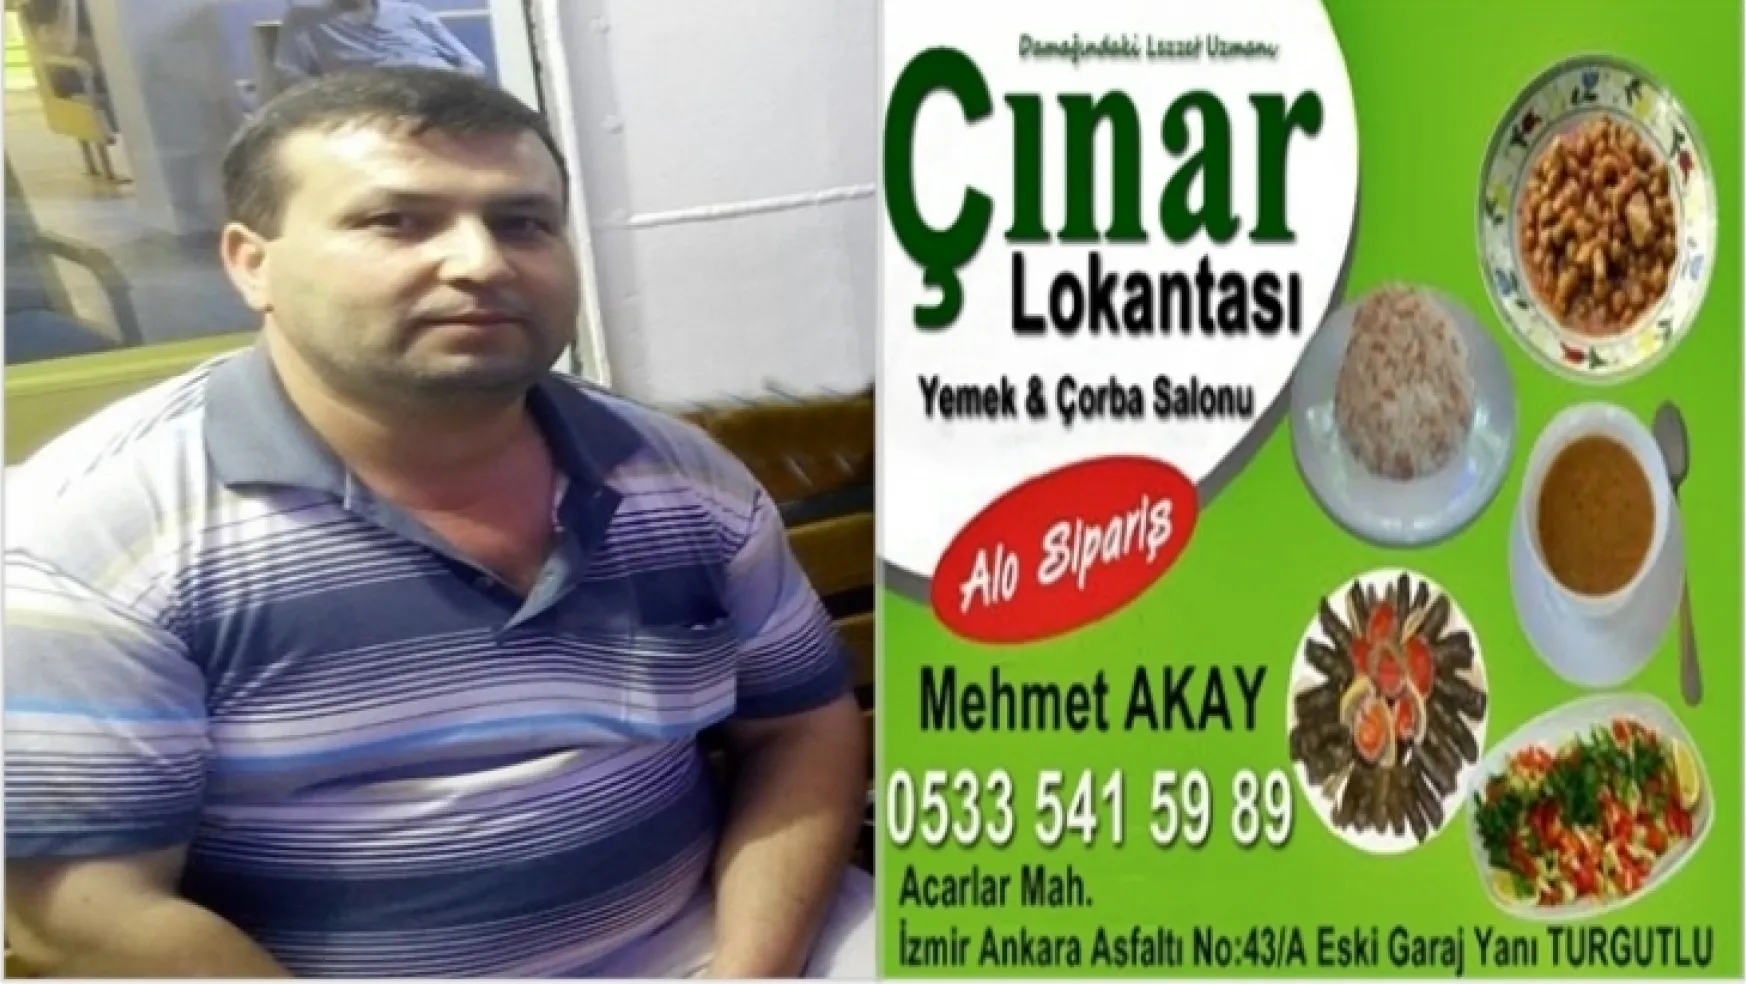 Turgutlu Çınar Lokantası, Kurban Bayramı dolayısıyla bir mesaj yayımladı.